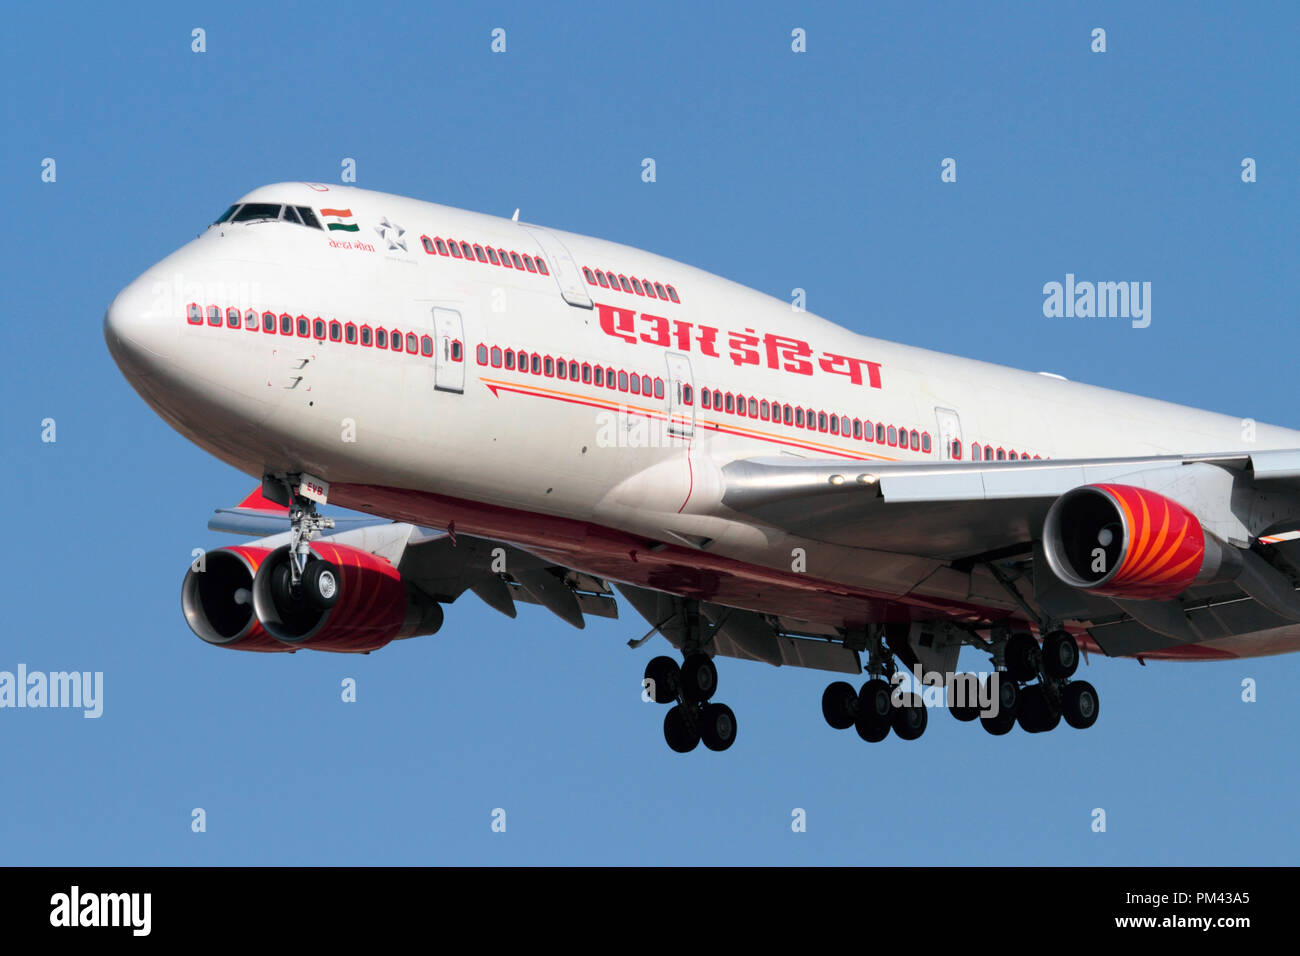 Air India Boeing 747-400 jumbo jet long haul aereo di linea sulla rotta di avvicinamento. Primo piano vista frontale. Foto Stock